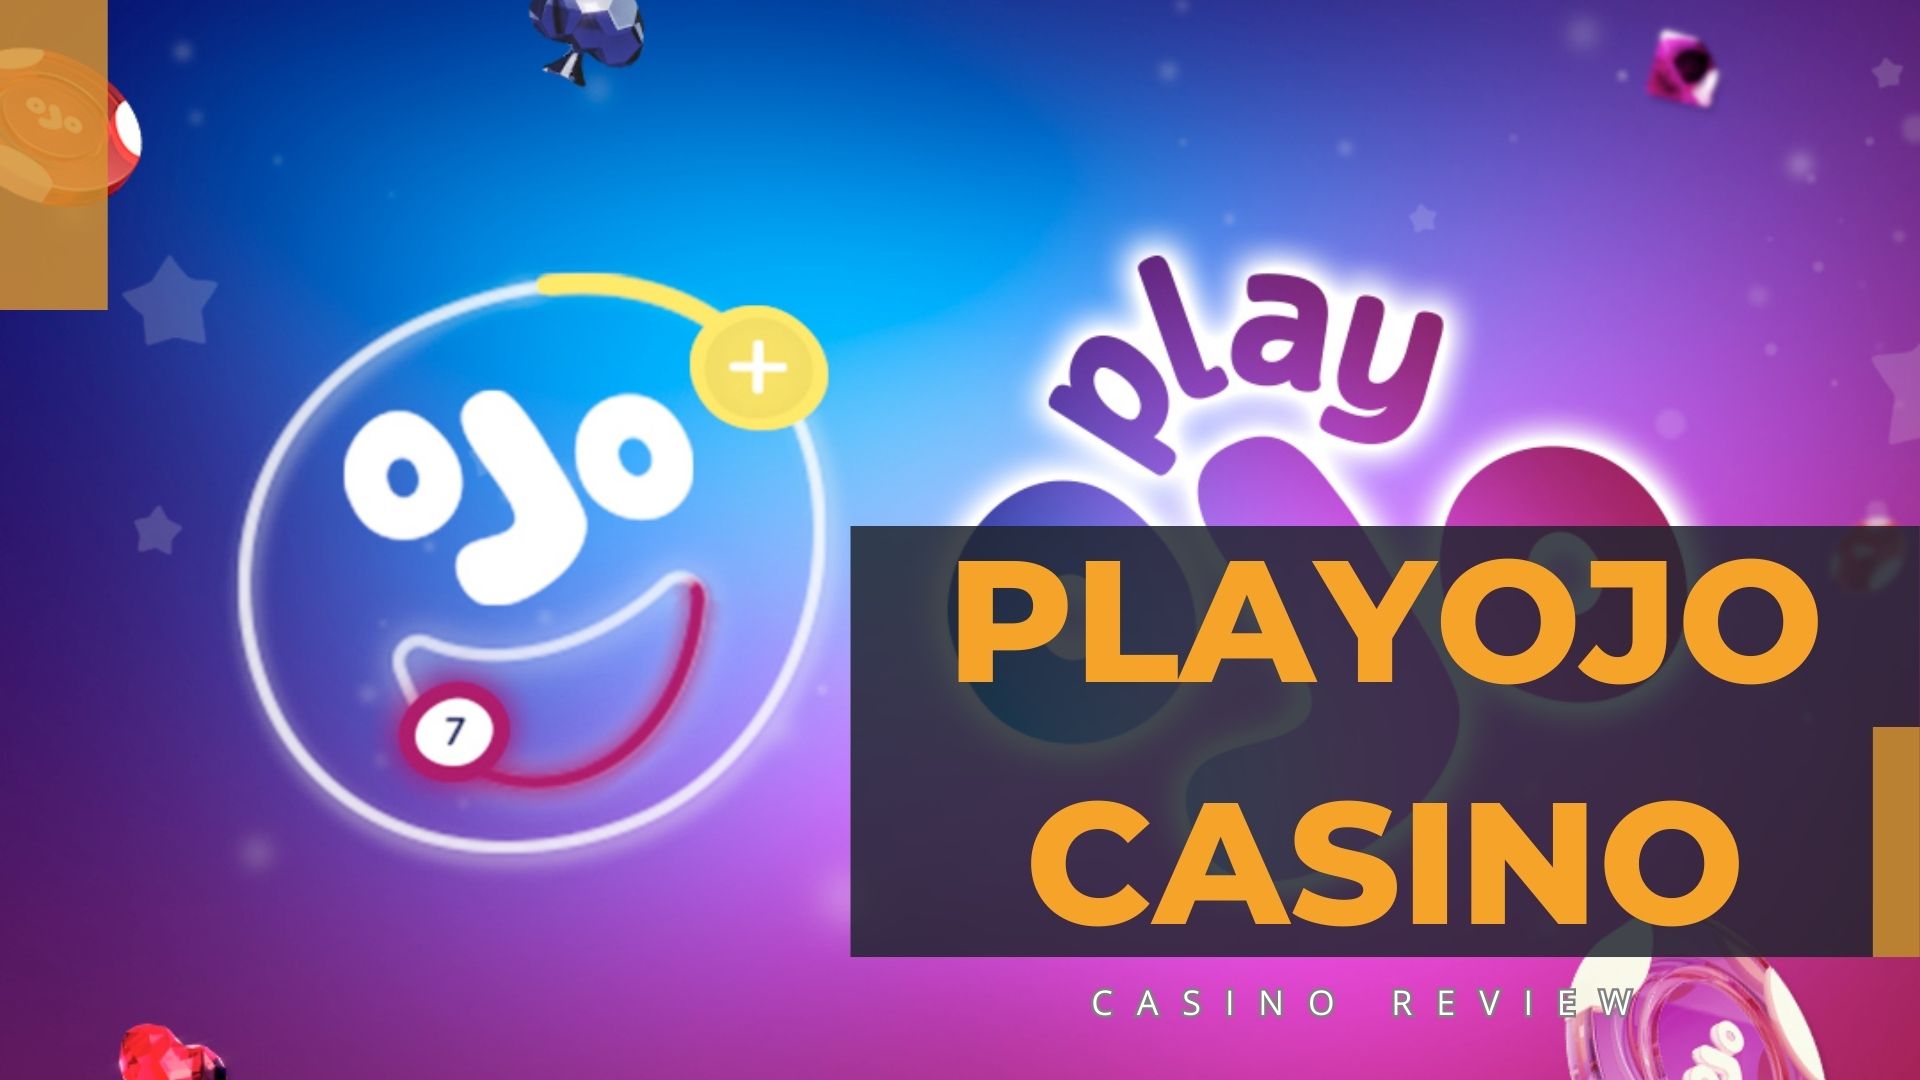 Playojo Casino Review